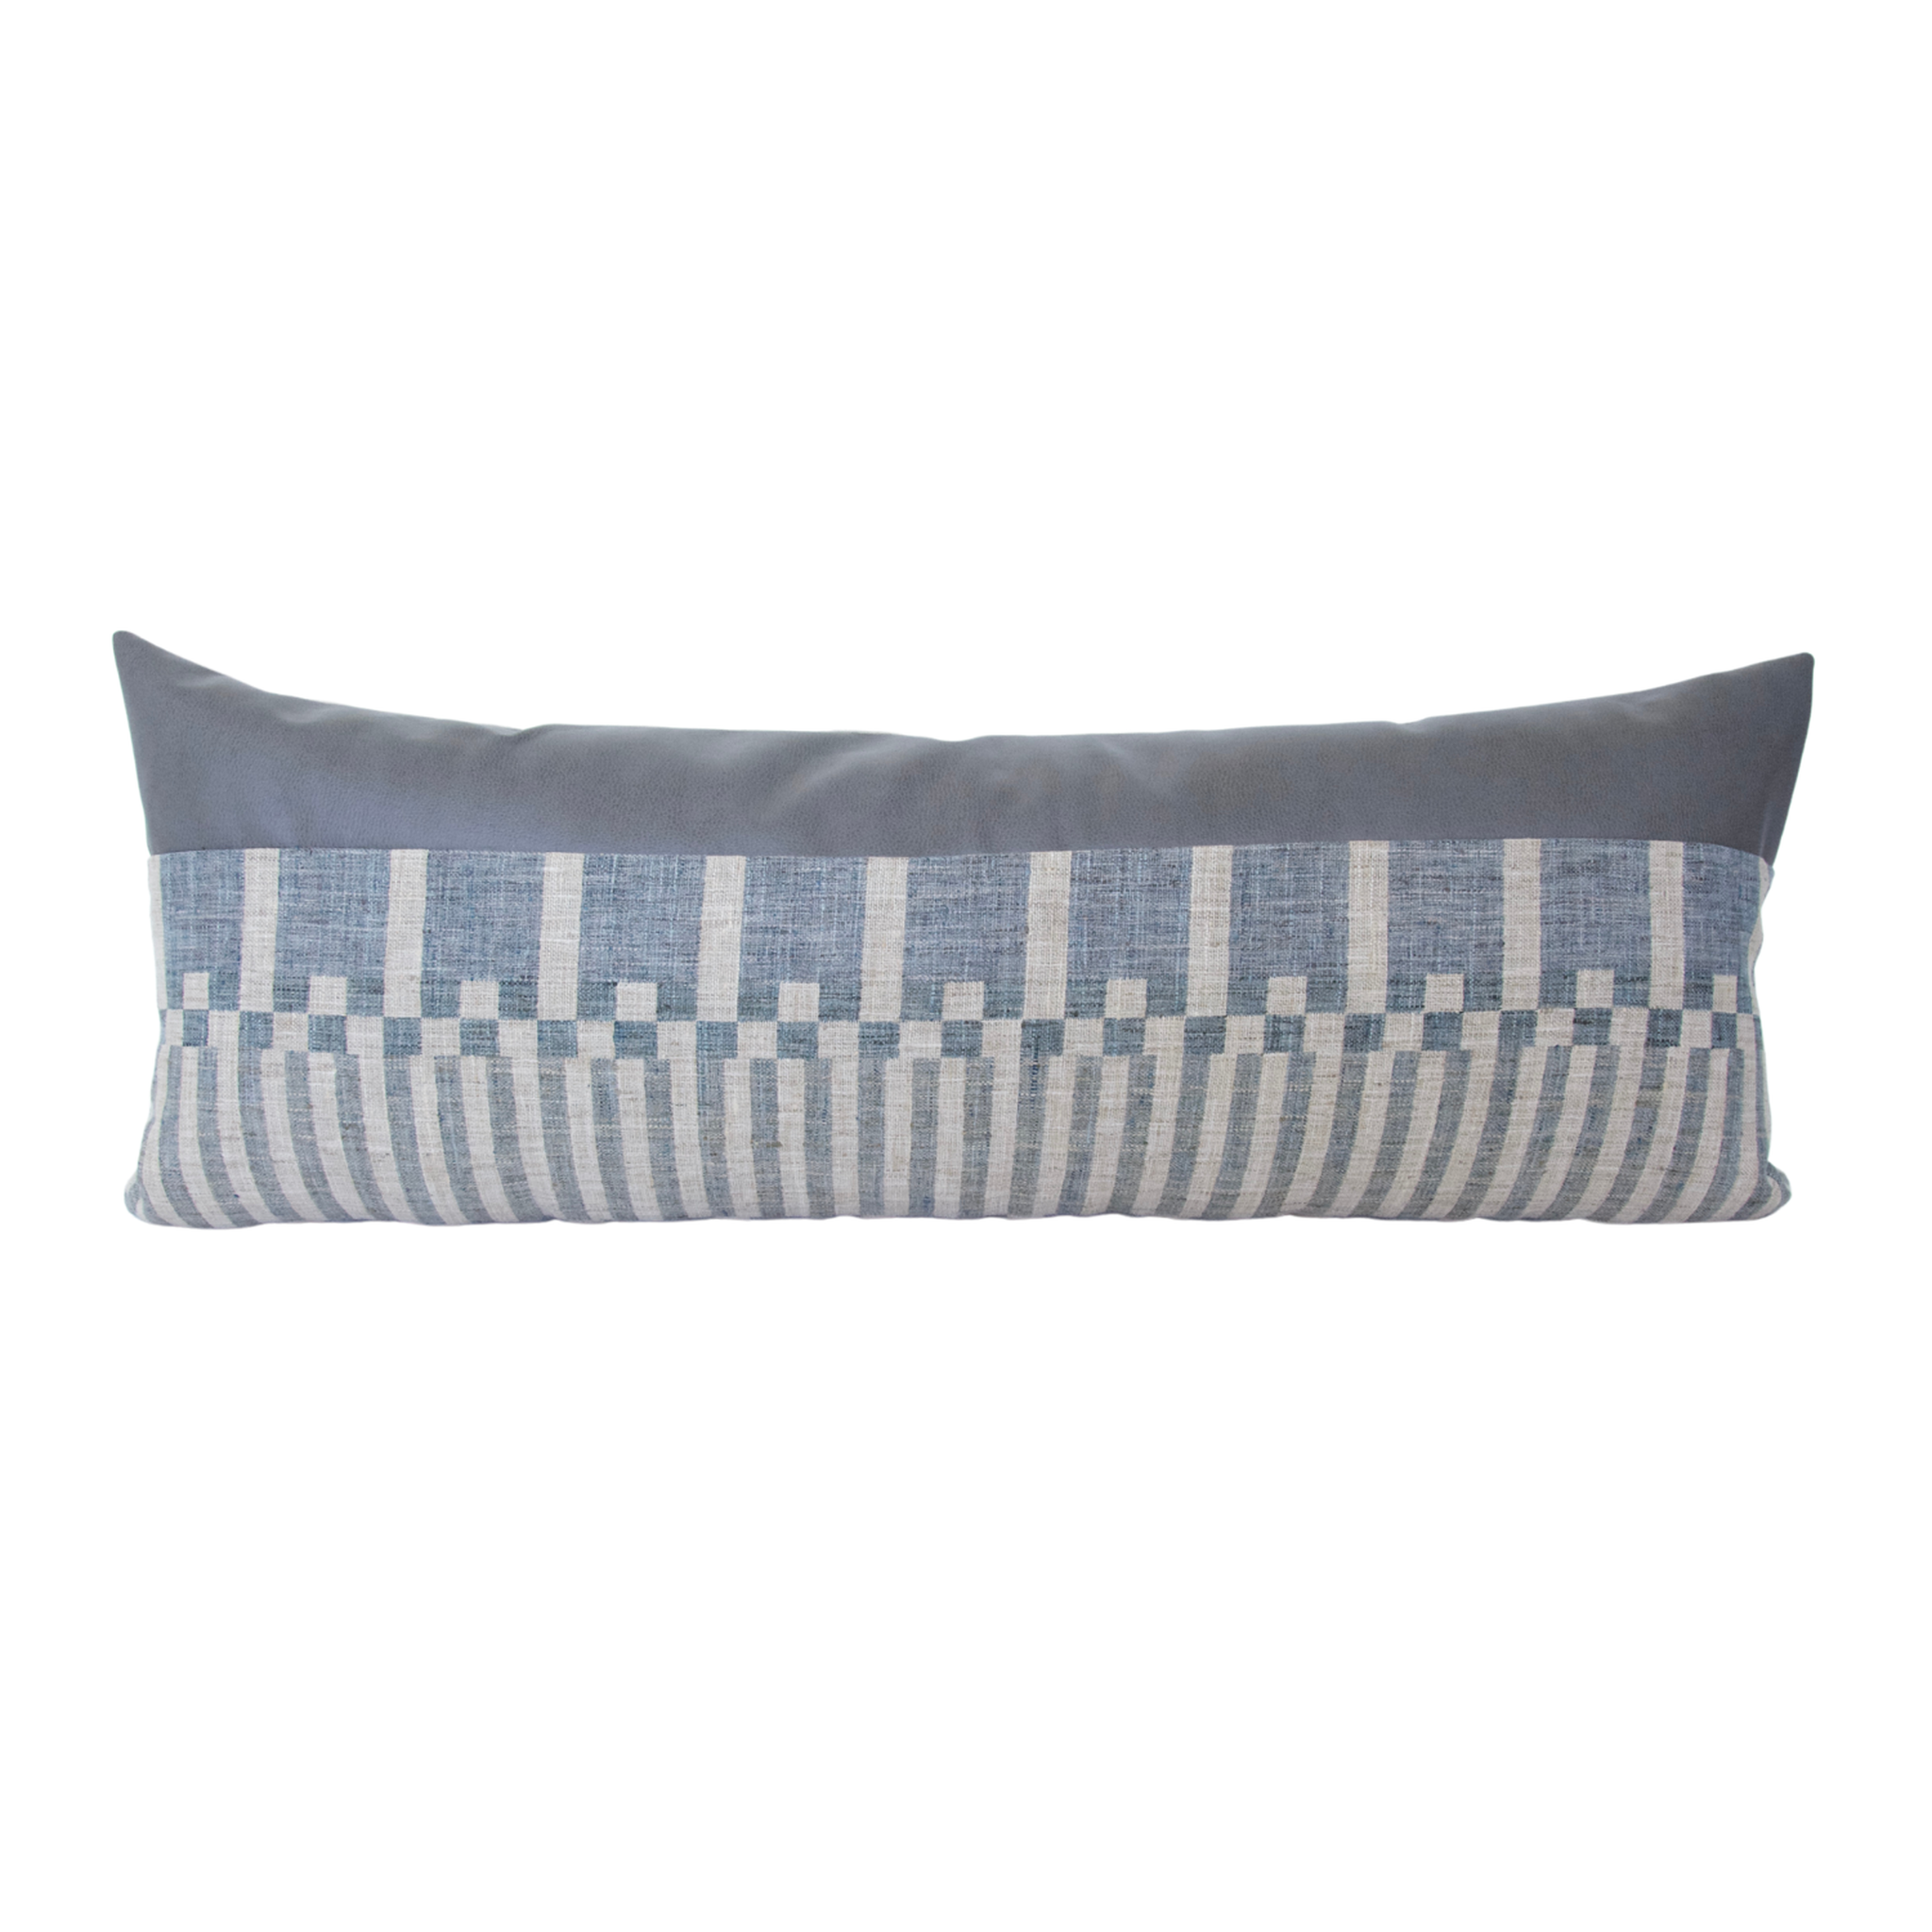 Large Throw Pillows, Grey Purple and Blue Lumbar Decorative Pillow